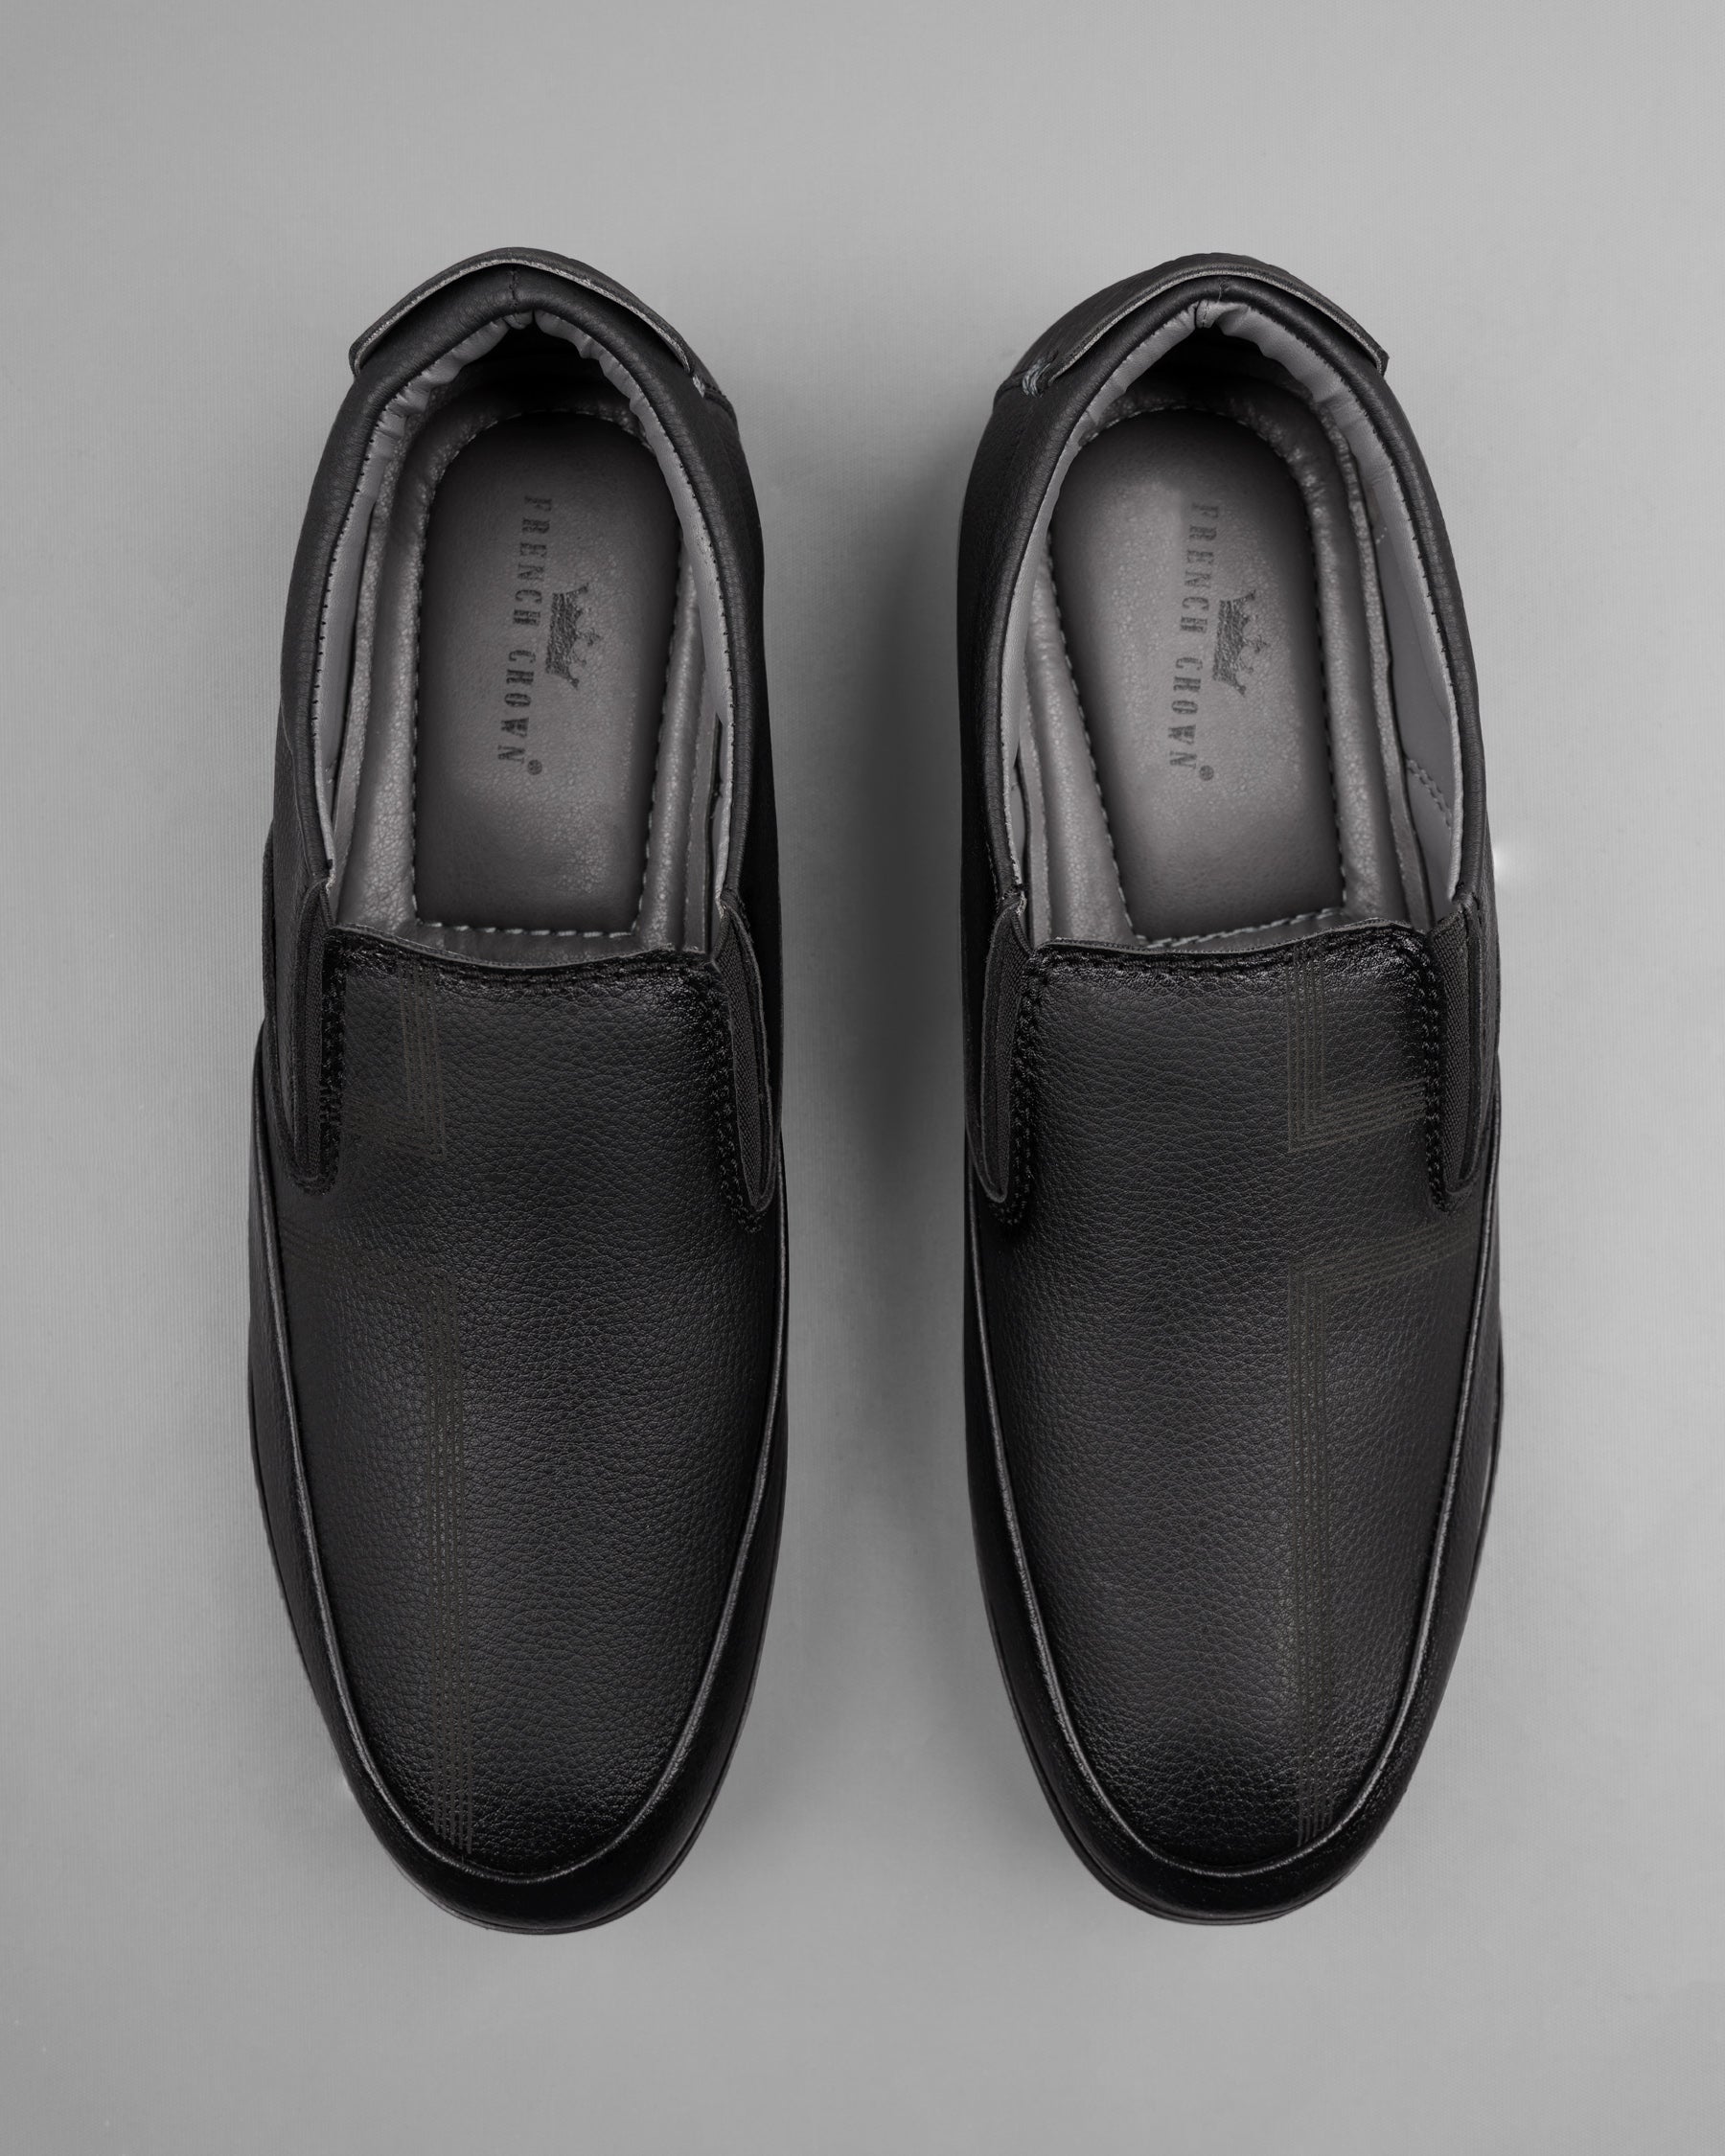 Jade Black 5 Stripe Patterned Slip-On Shoes FT011-6, FT011-7, FT011-8, FT011-9, FT011-10